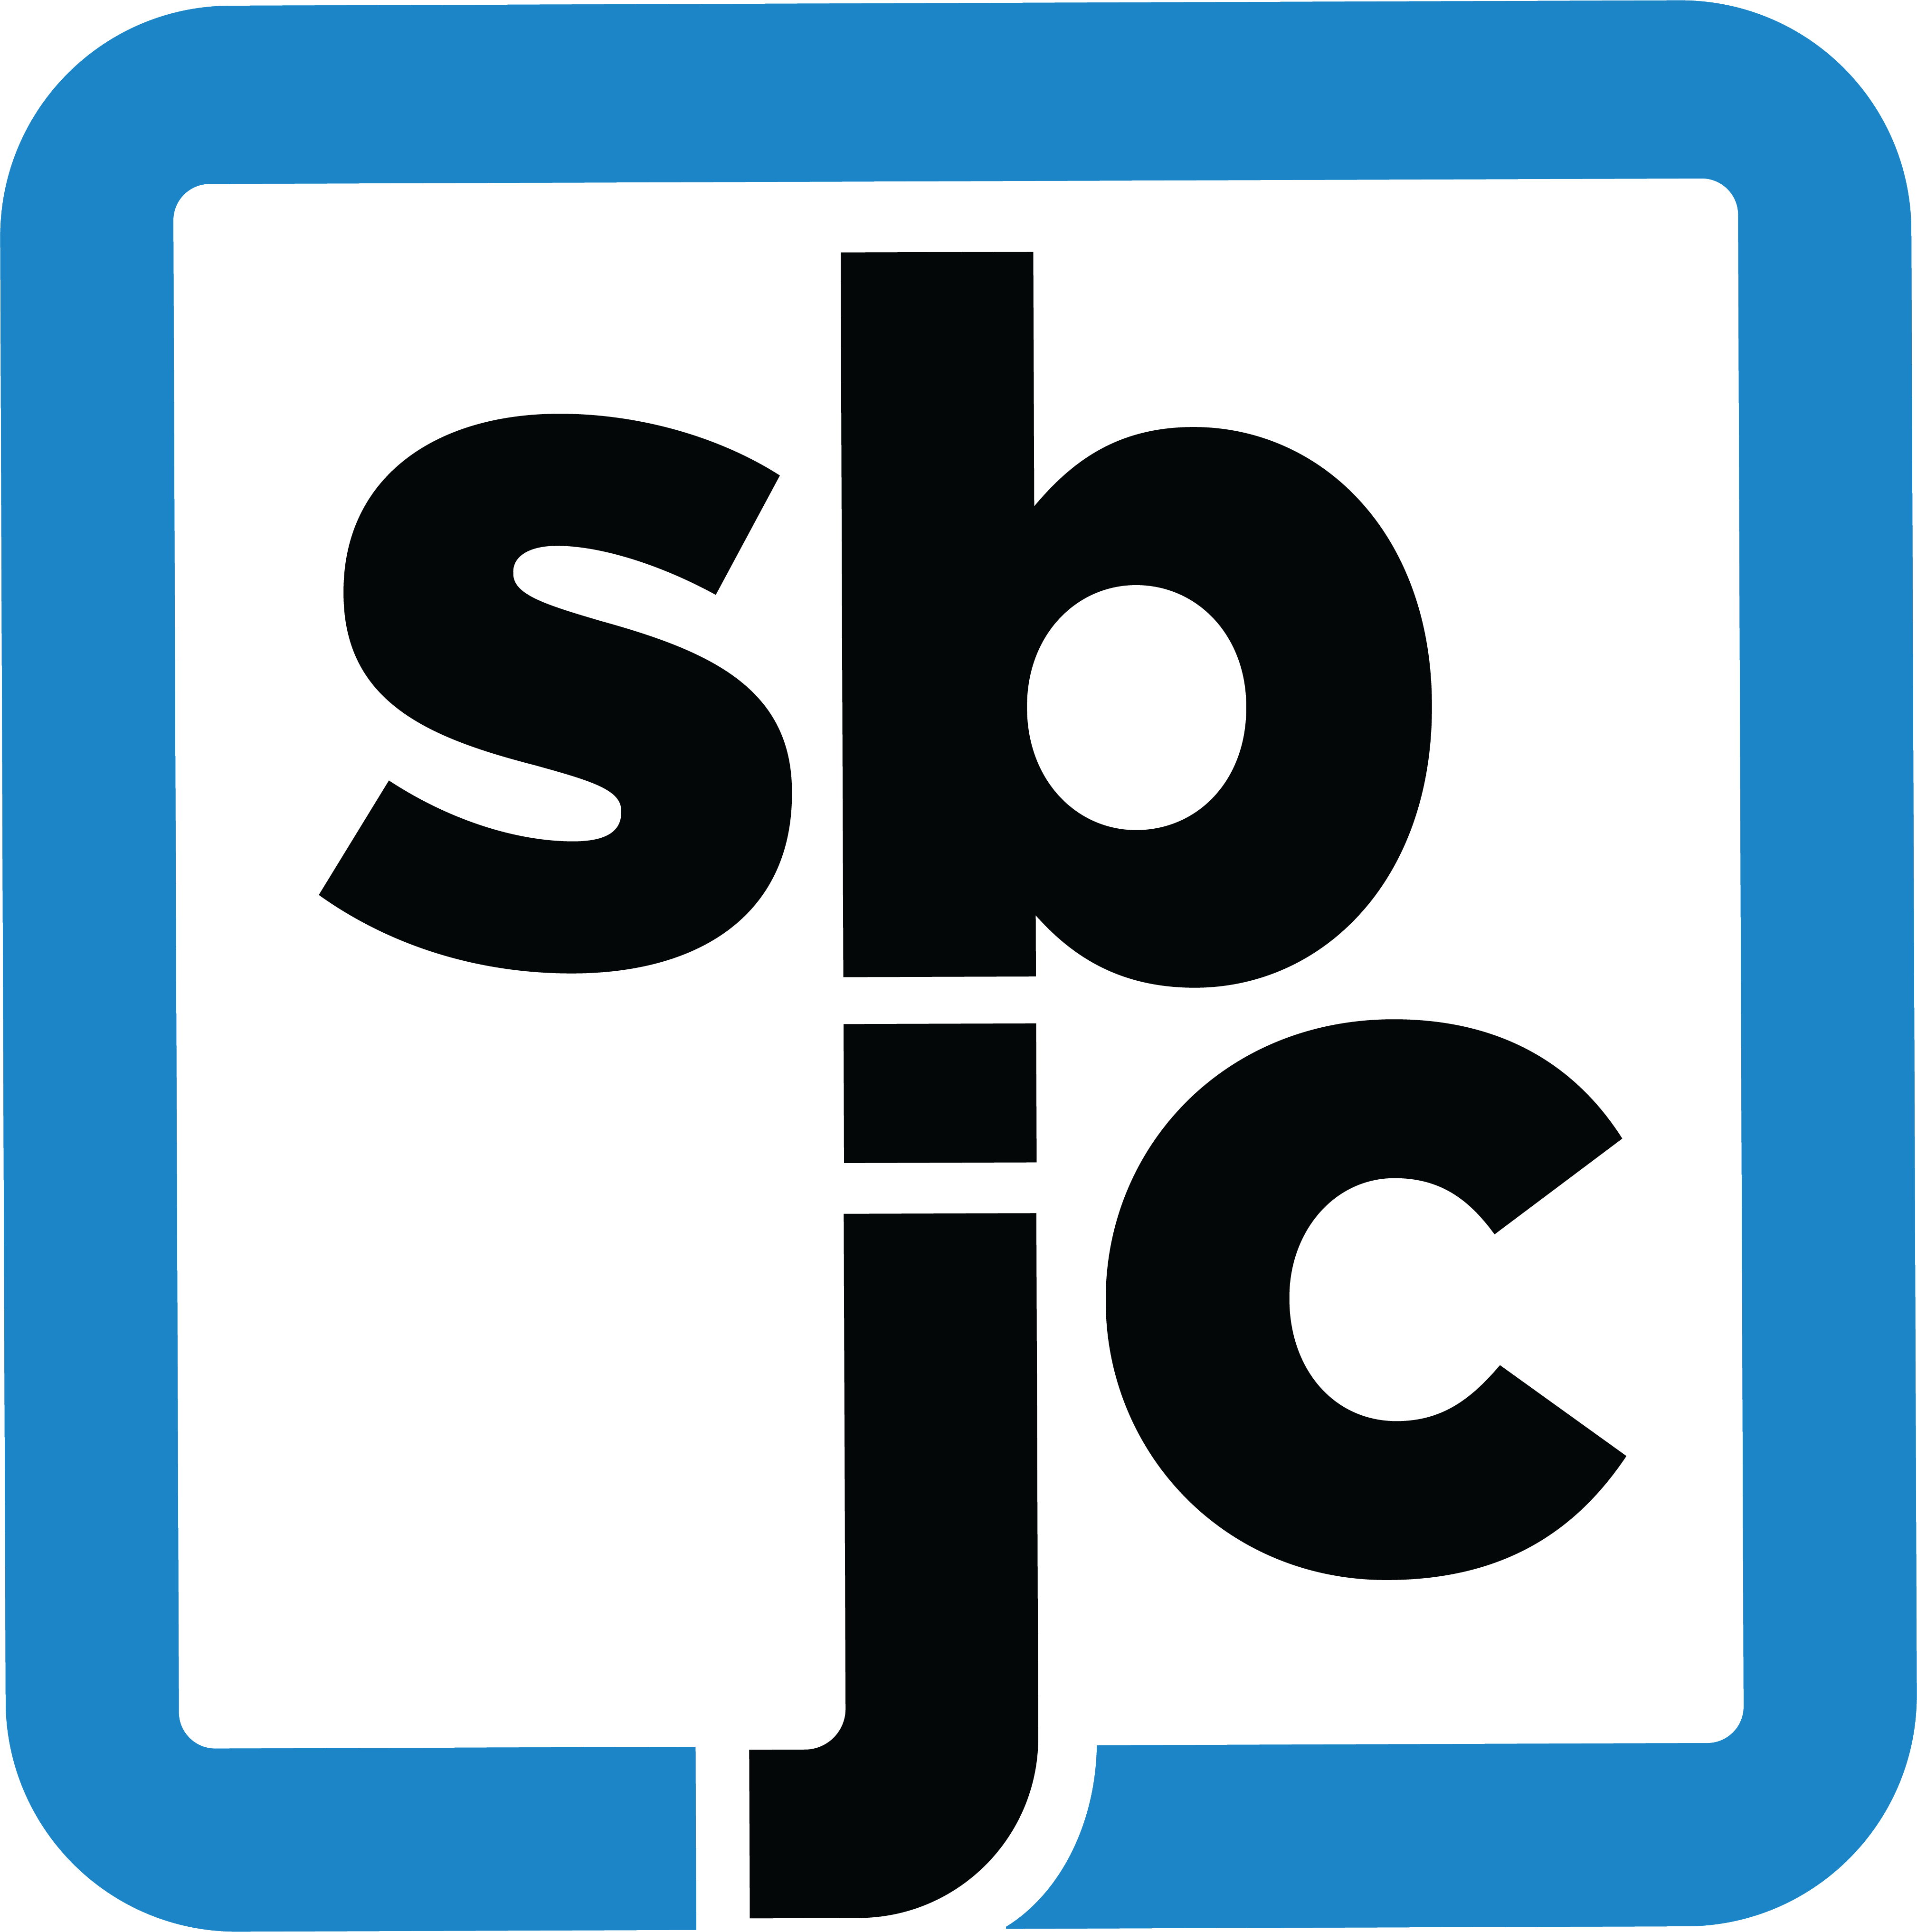 SBJC square logo 